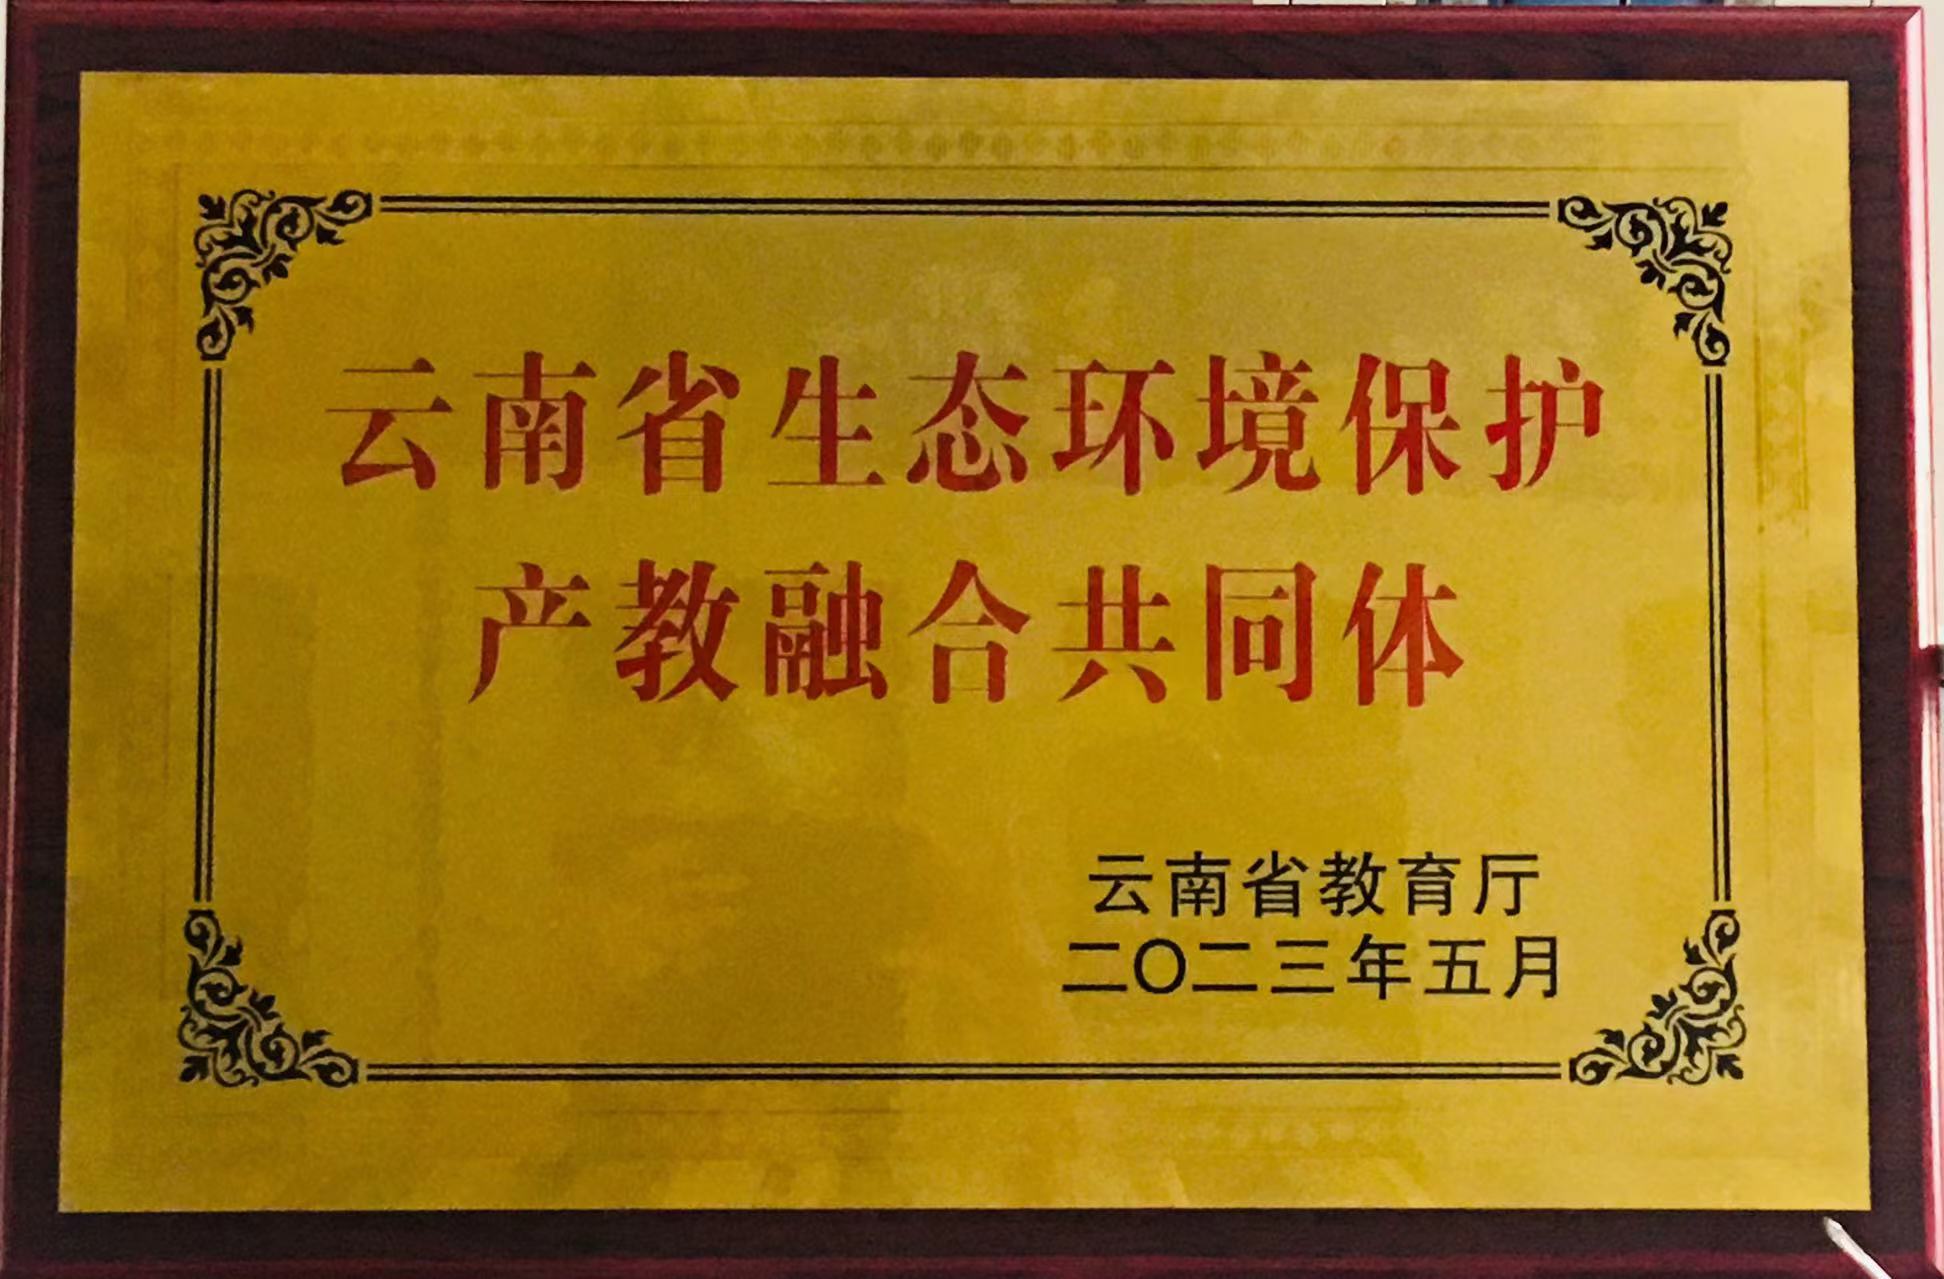 昆明绿岛环境科技有限公司被授予”云南省生态环境保护产教融合共同体“首批成员单位牌匾